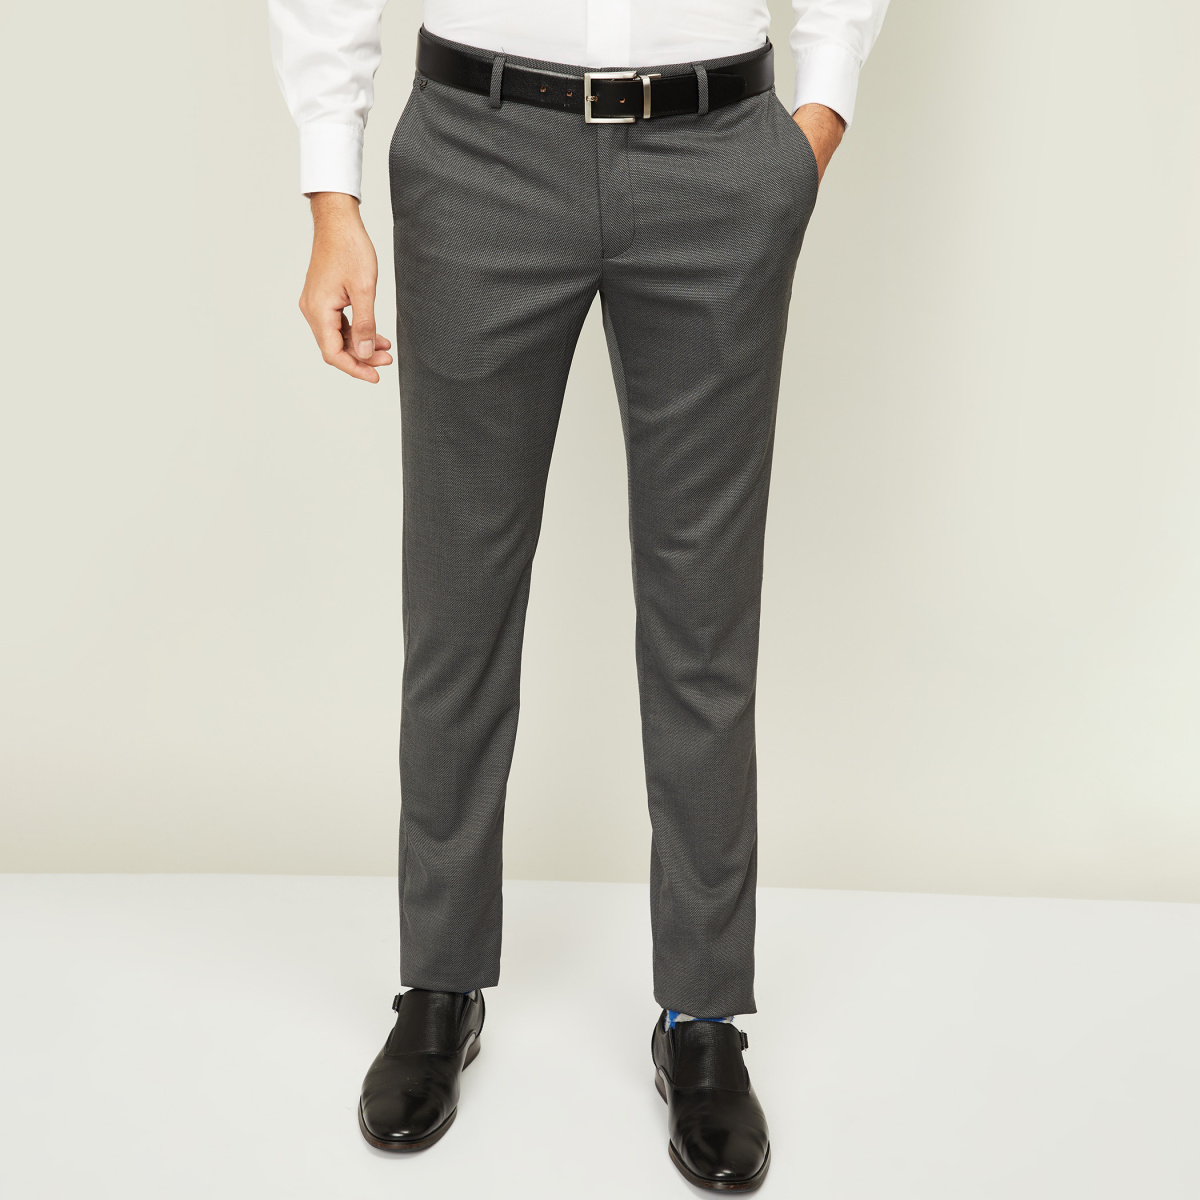 ASOS DESIGN super skinny smart trouser in black  ASOS